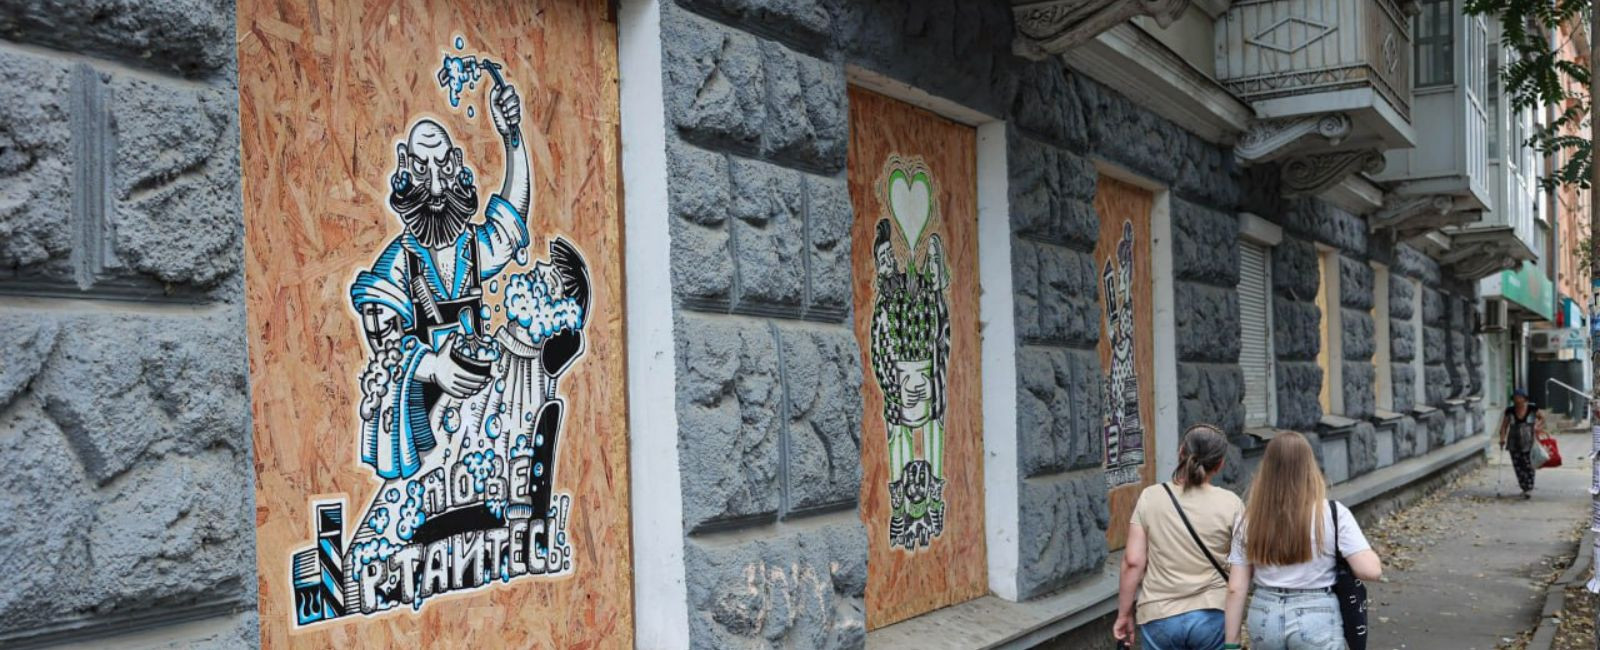 Роботи херсонських художників у забитих вікнах міста: як виник проєкт “На плаву”